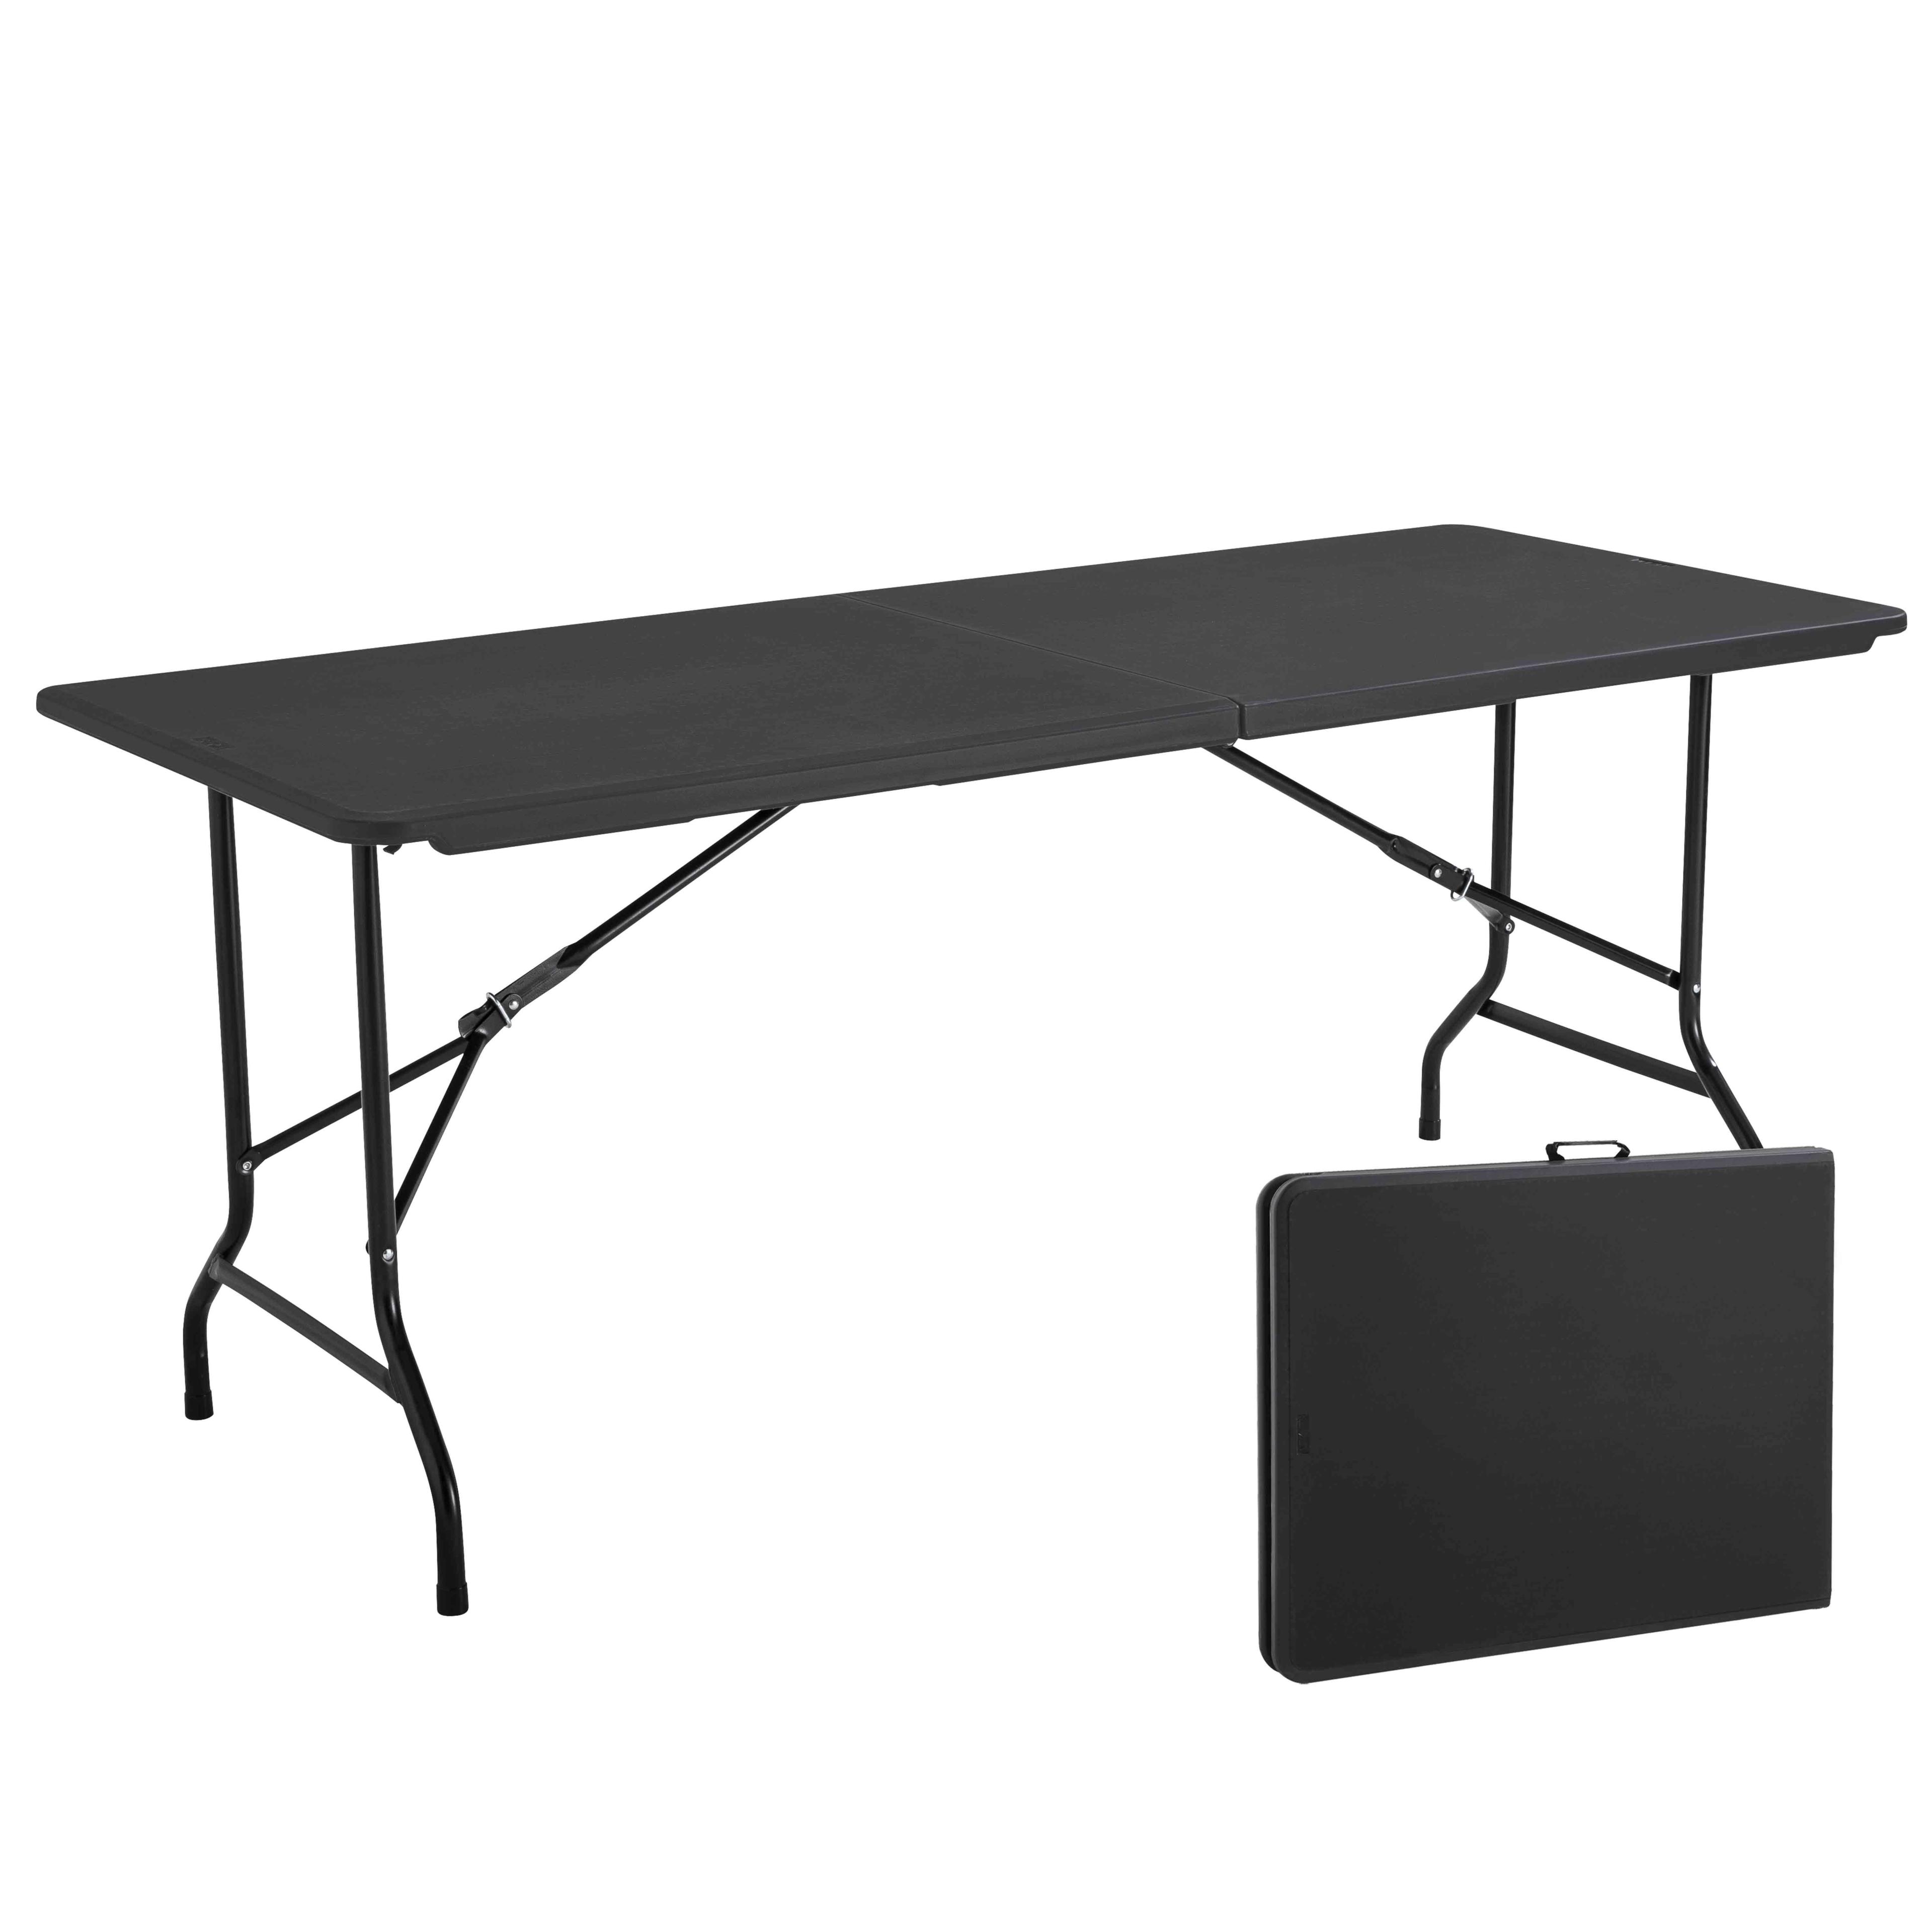 https://www.mobeventpro.com/39566-big_default/table-pliante-noire-180cm-8-places-pehd.jpg?v=1683876234